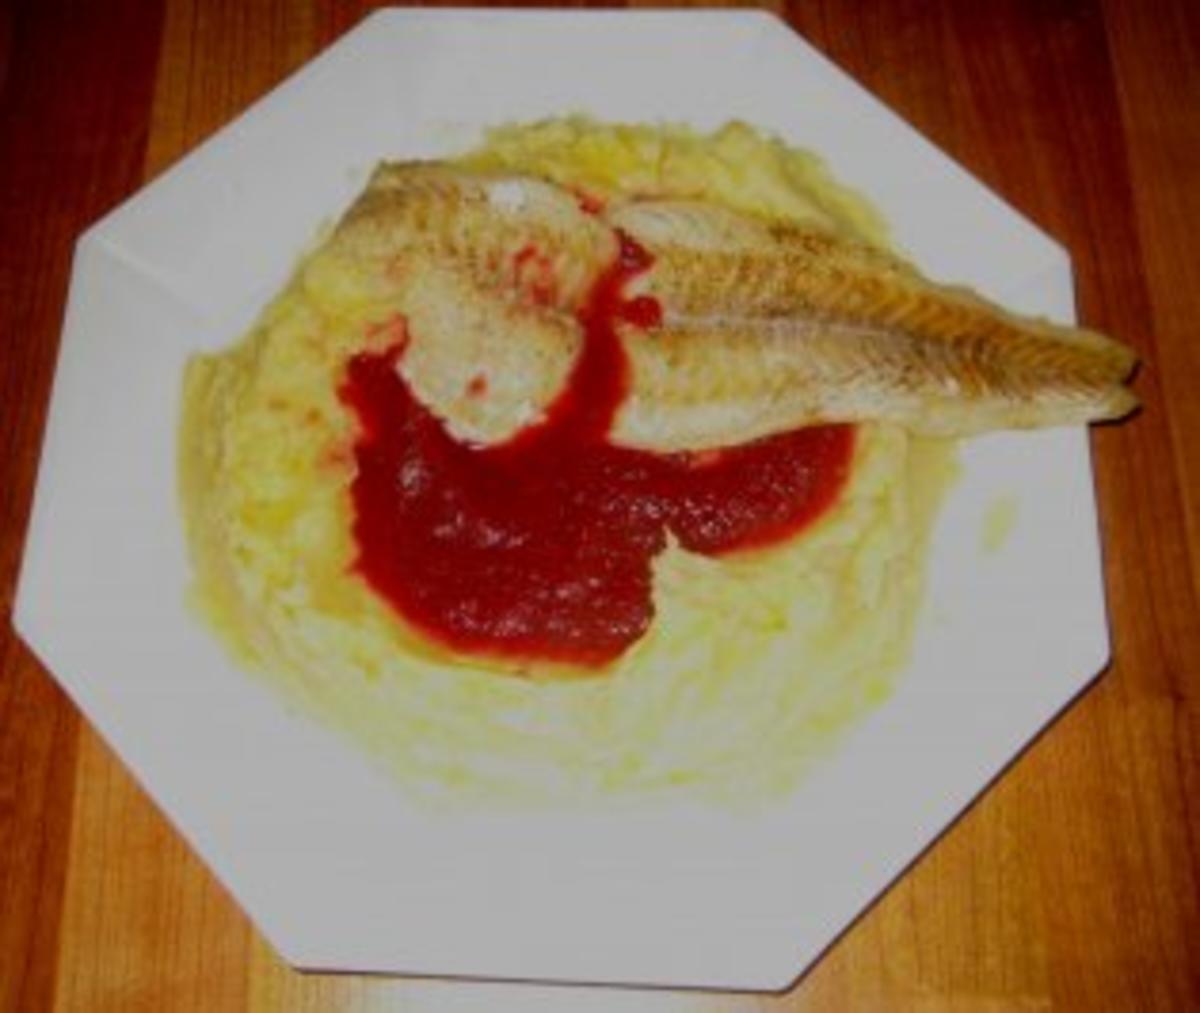 Fisch - Kabeljaufilet auf rote Betespiegel mit Kartoffelrand - Rezept - Bild Nr. 2